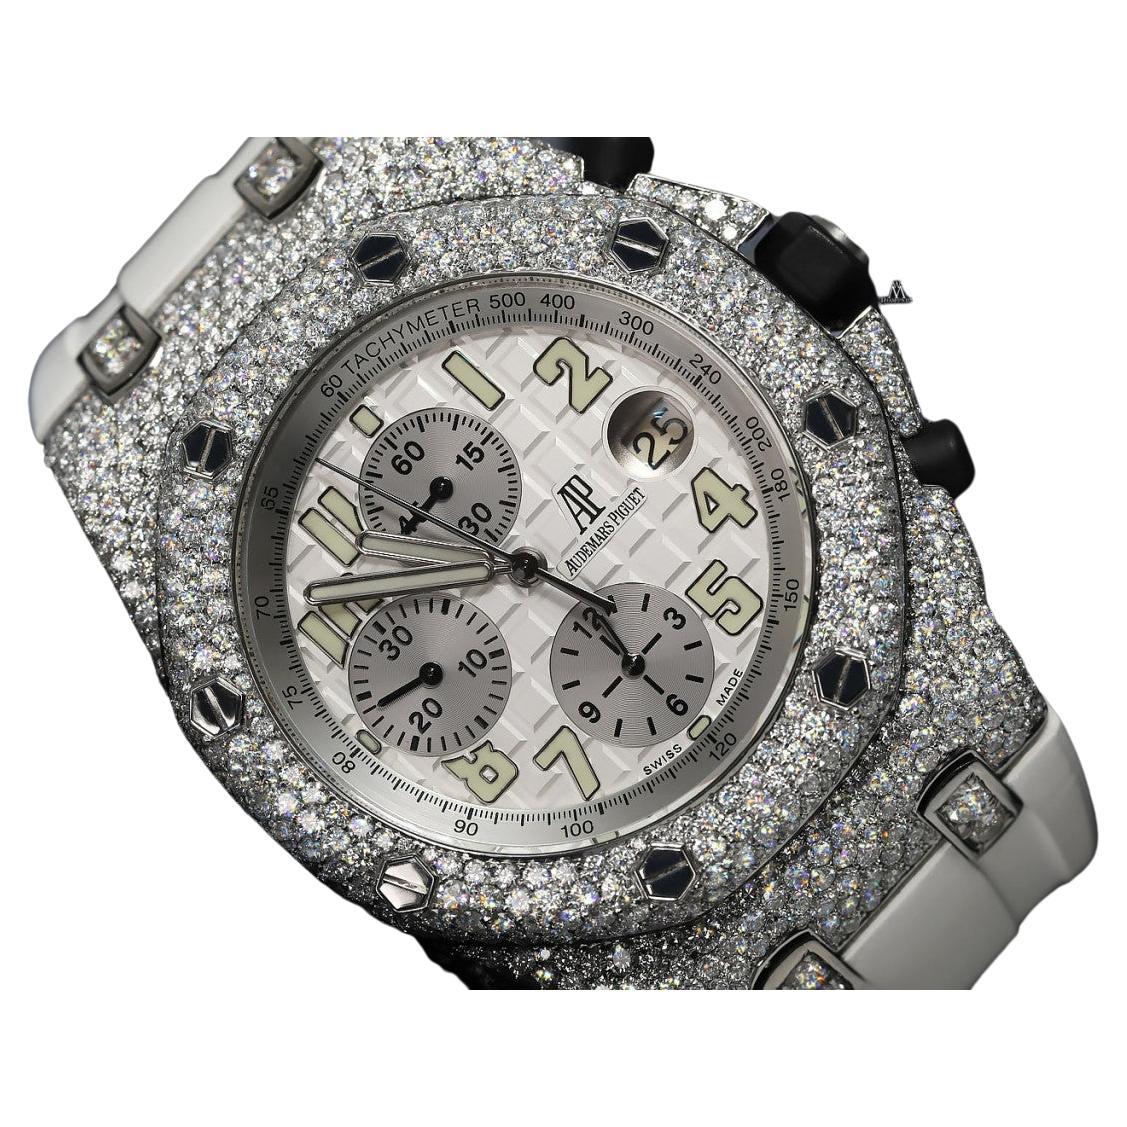 Audemars Piguet: Offshore-Uhr aus Eiche mit echten Diamanten, maßgefertigt